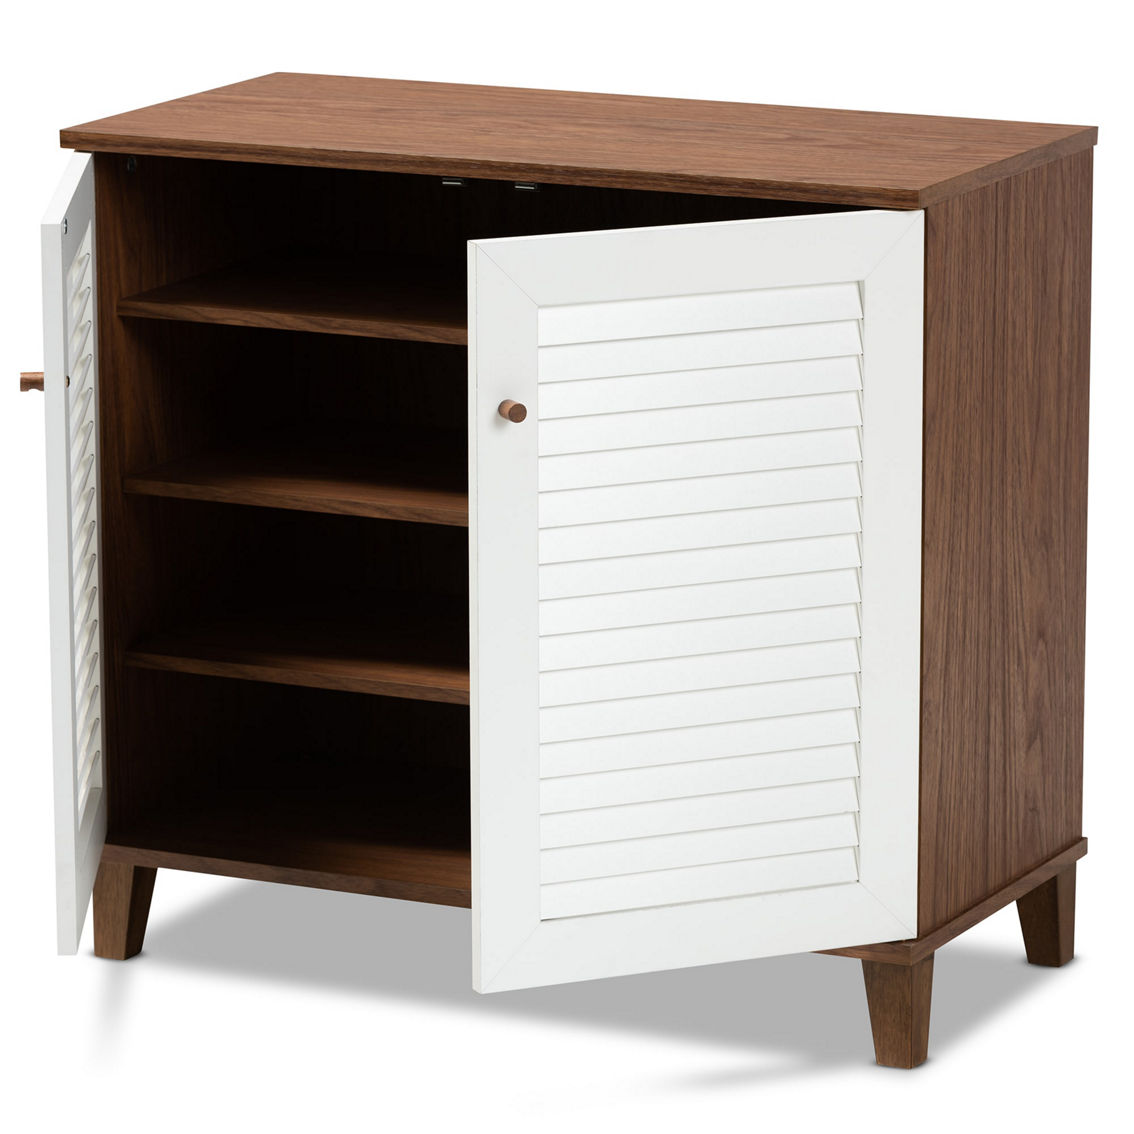 Baxton Studio Coolidge White and Walnut Finished 4-Shelf Wood Shoe Storage Cabinet - Image 2 of 5